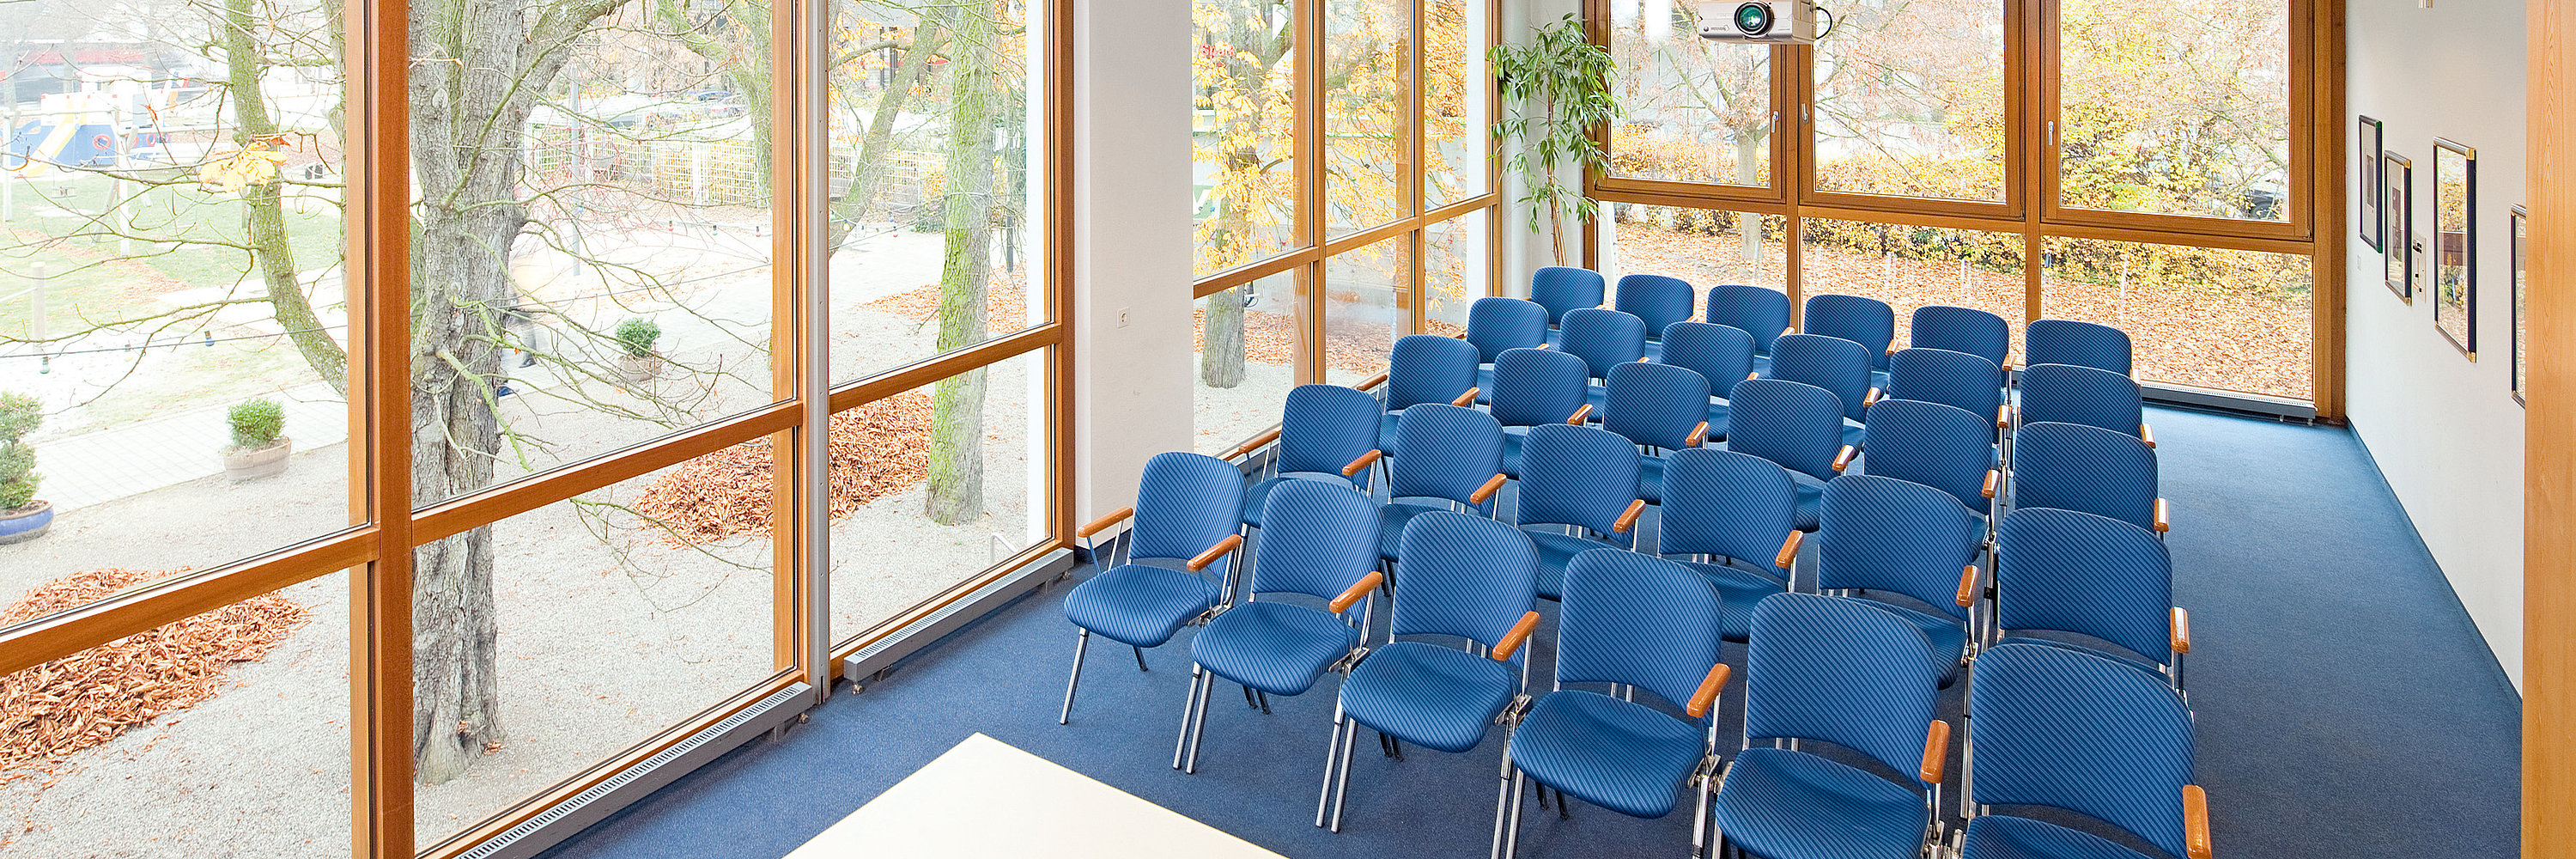 Unser Foto zeigt den Konferenzraum Markgraf Karl, der mit blauen Stühlen gefüllt ist. Foto: Contrast Marketing für die Stadt Günzburg